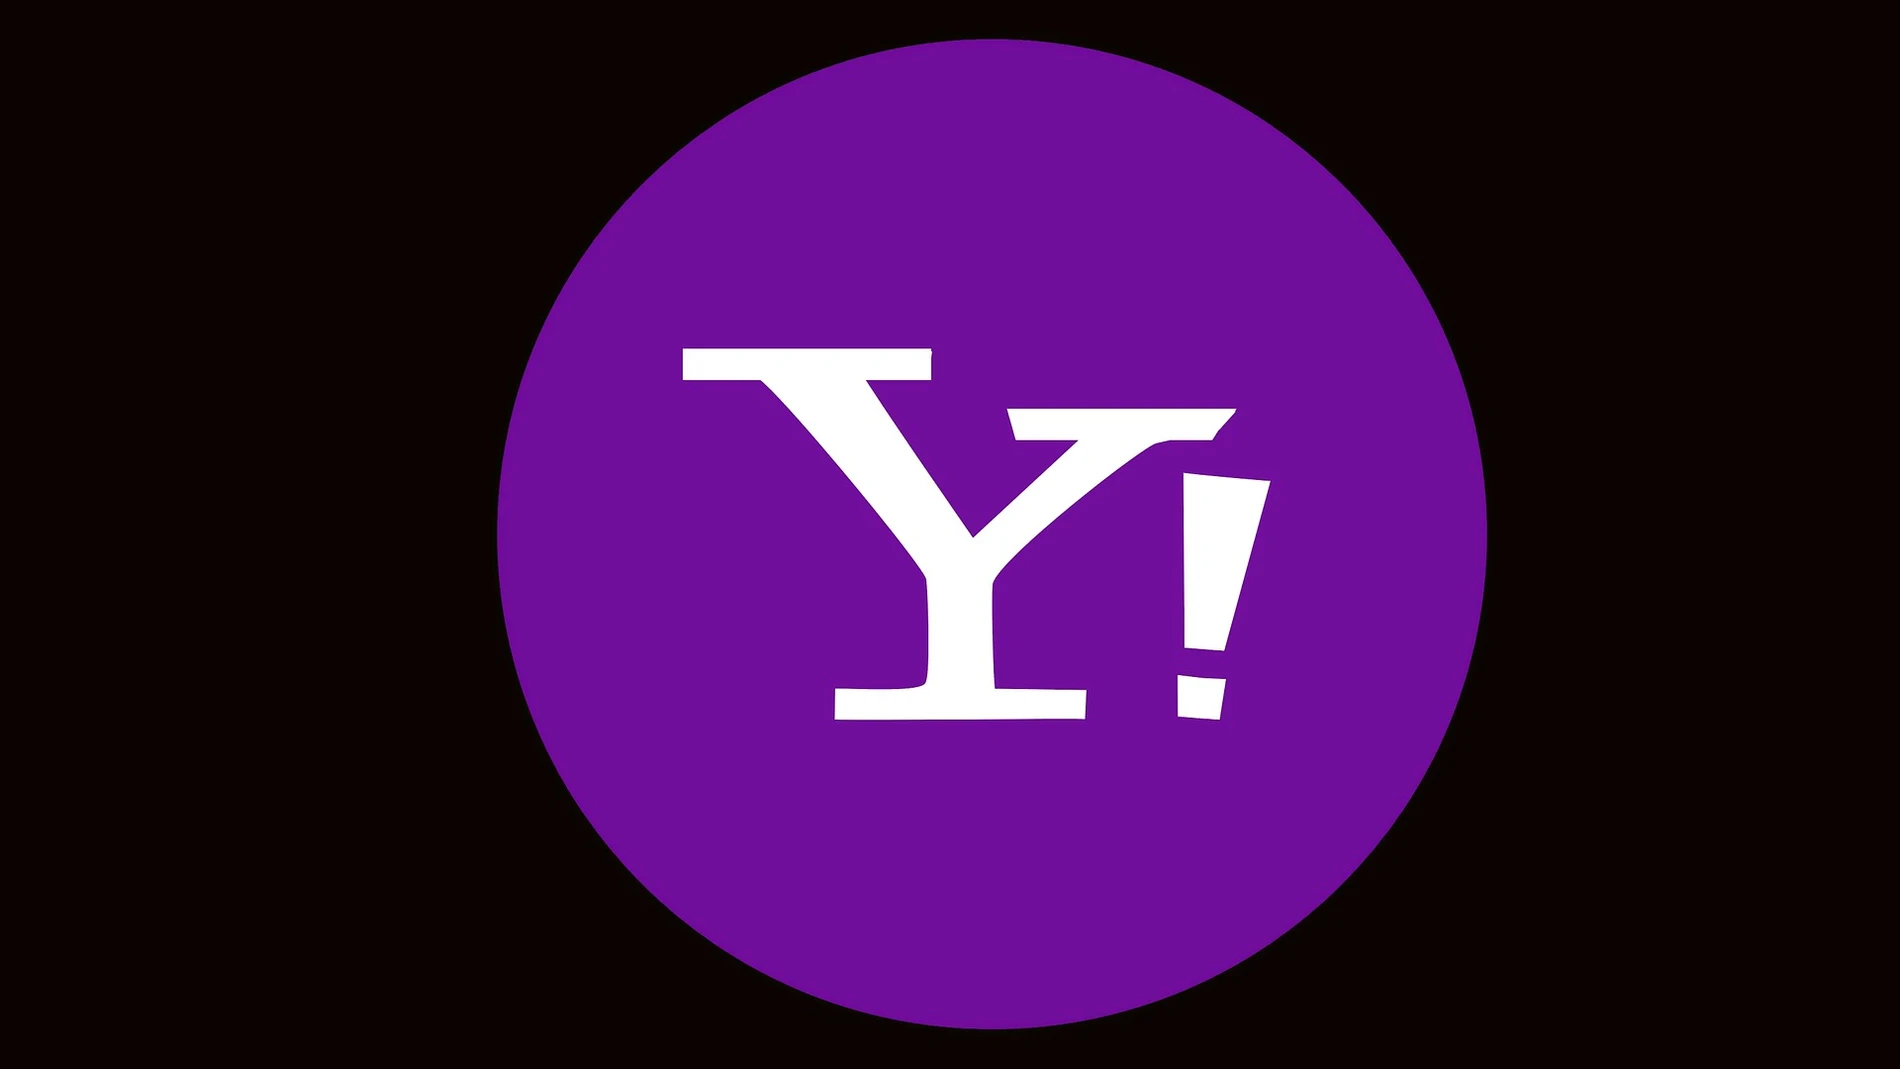 Adiós a Yahoo Respuestas: estas son las mejores preguntas tras más de 15 años